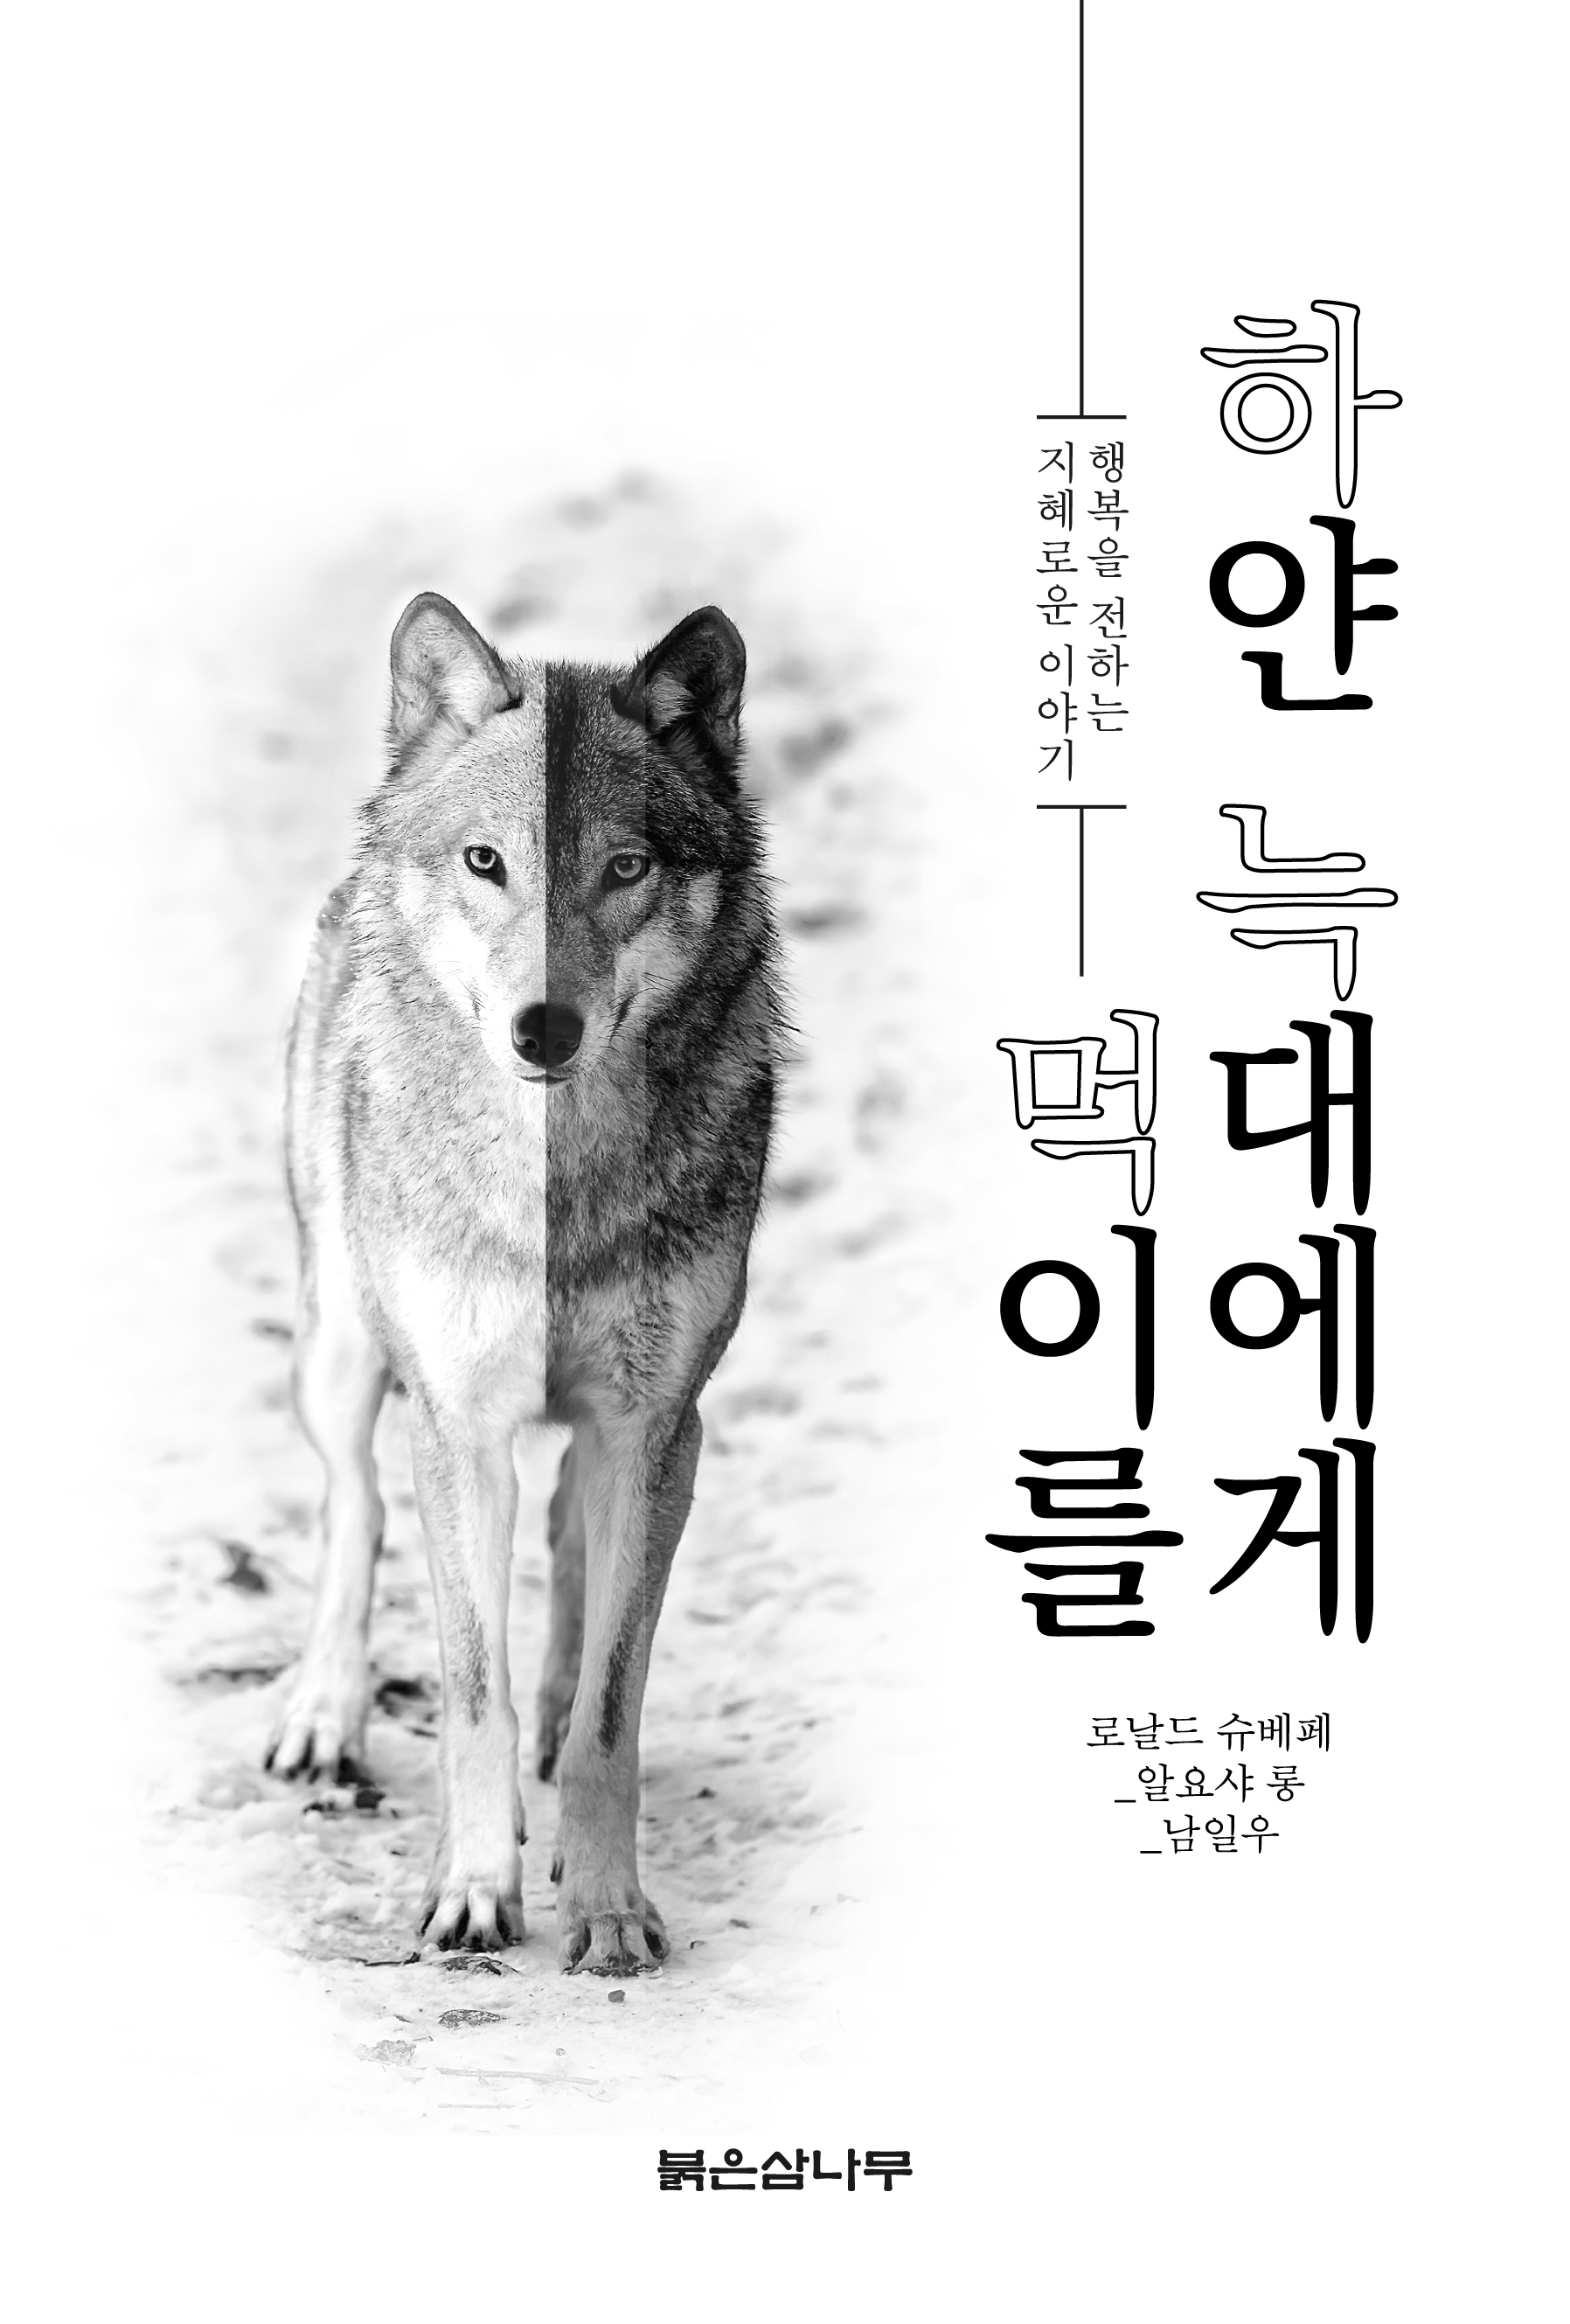 한독사회과학회 회원 남일우 박사 『하얀 늑대에게 먹이를』출간